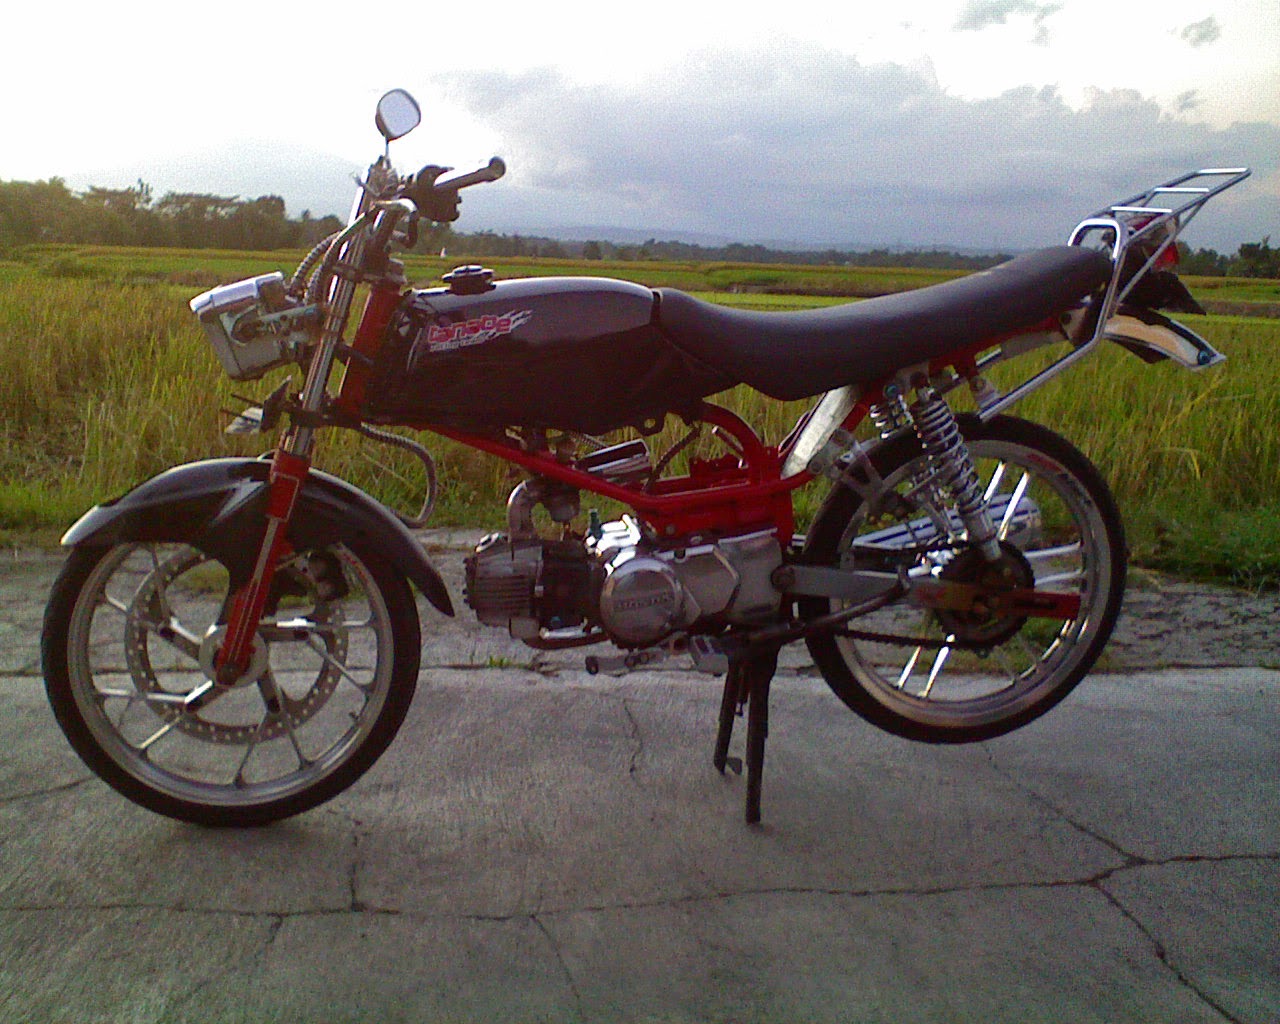 Kumpulan Foto Modifikasi Motor Yamaha Rx King Terbaru Gambartopcom